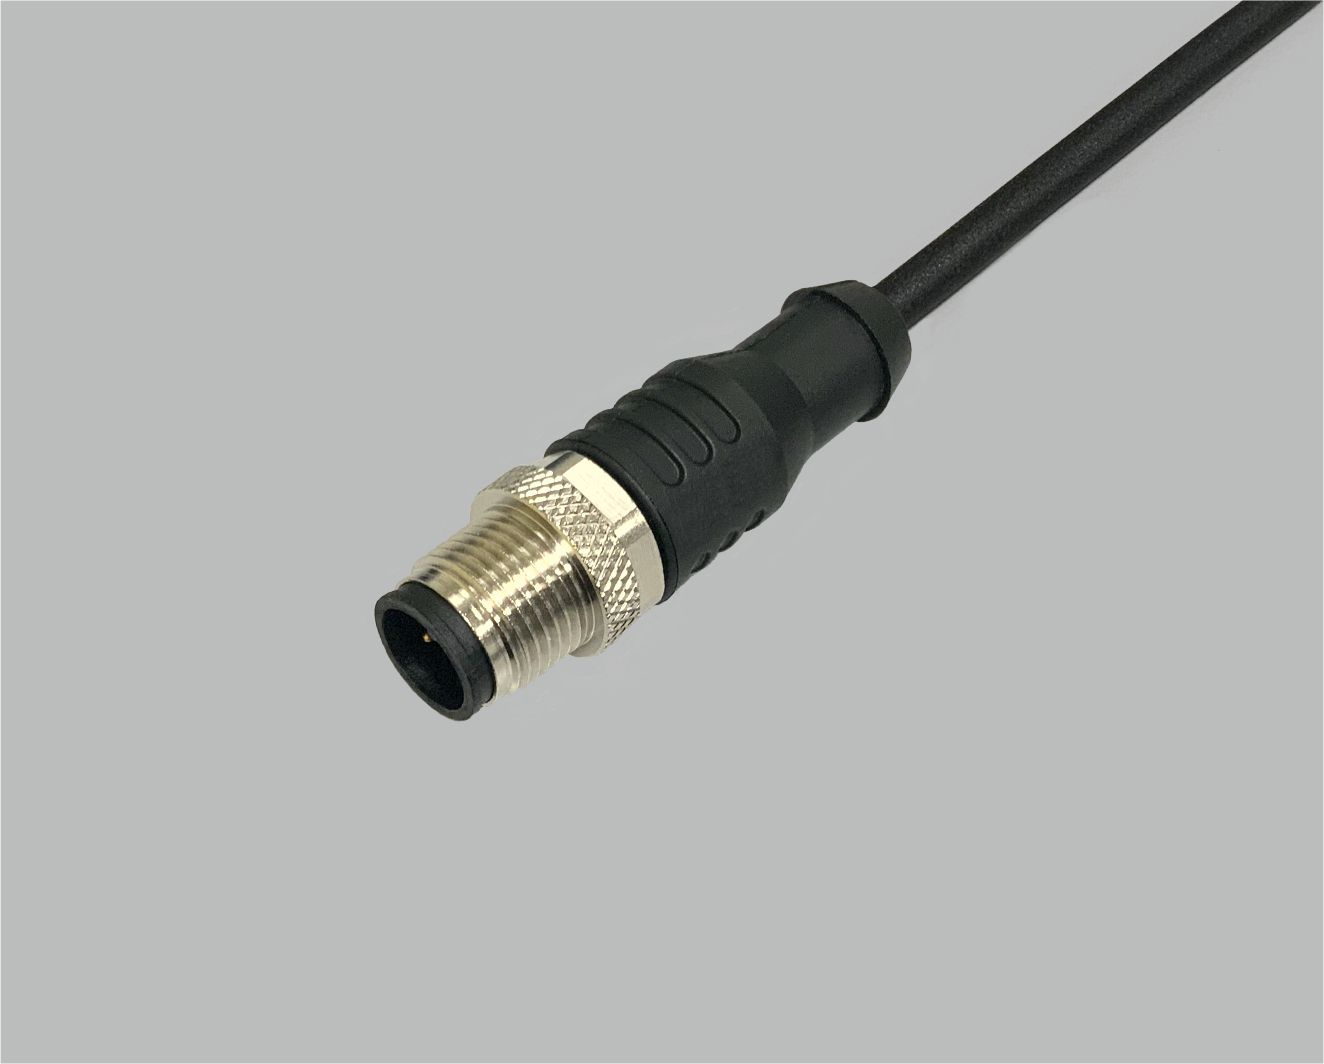 M12 Sensor/Aktor Anschlussleitung PUR, Stecker gerade, 4.5-polig, auf offenes Ende, 0,34 mm², schwarz, 2 m